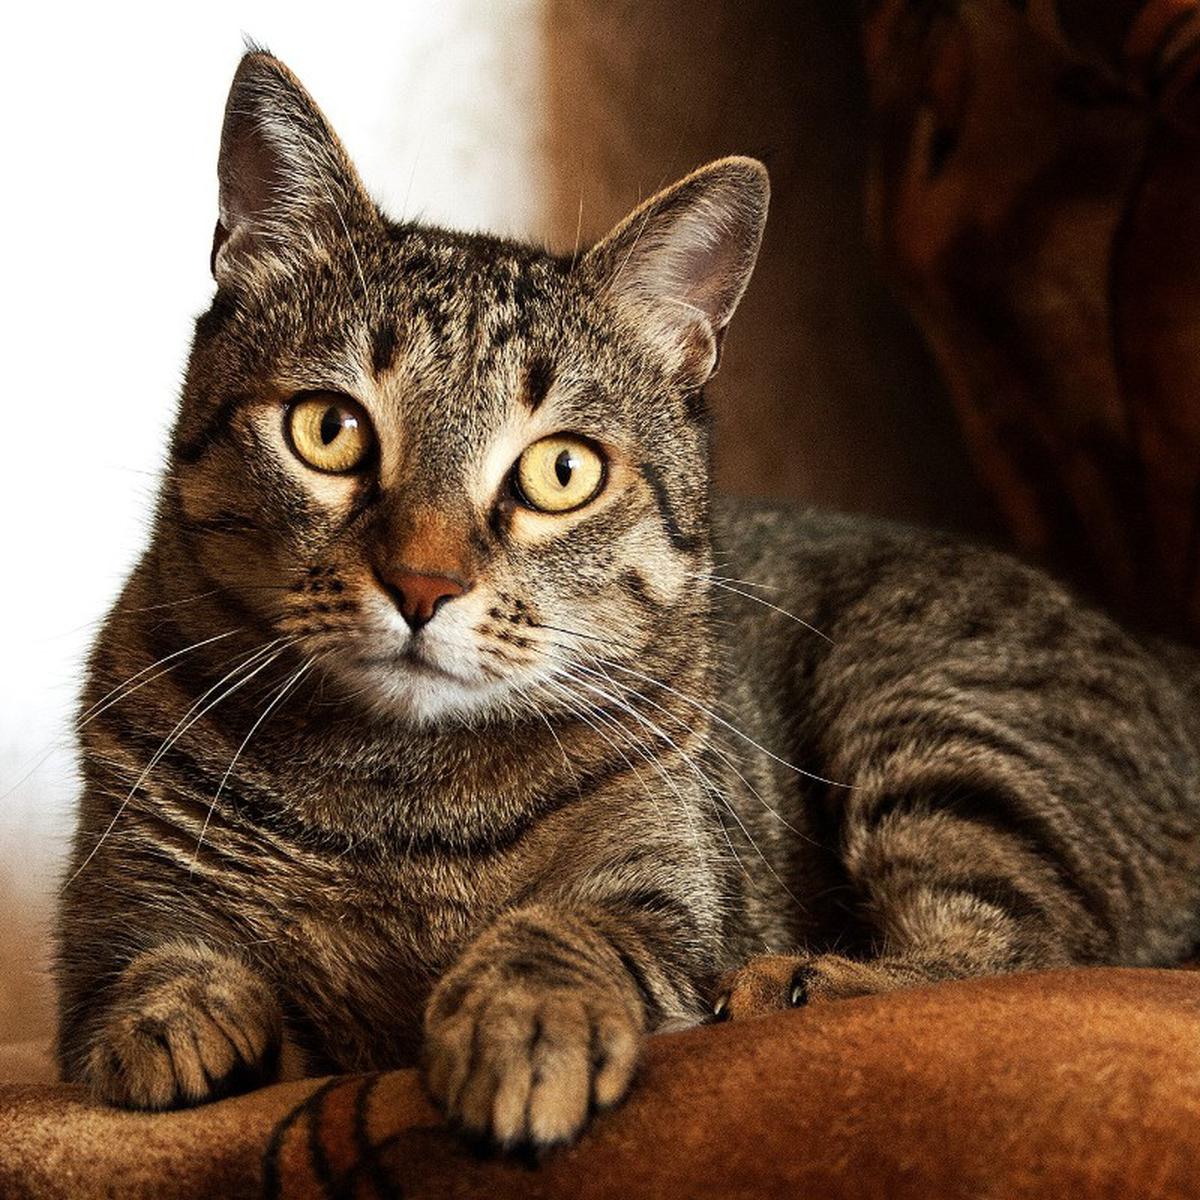 Trucos caseros para mascotas: cómo evitar que los gatos arañen los muebles  | Remedios | Life Hacks | nnda nnni | RESPUESTAS | MAG.